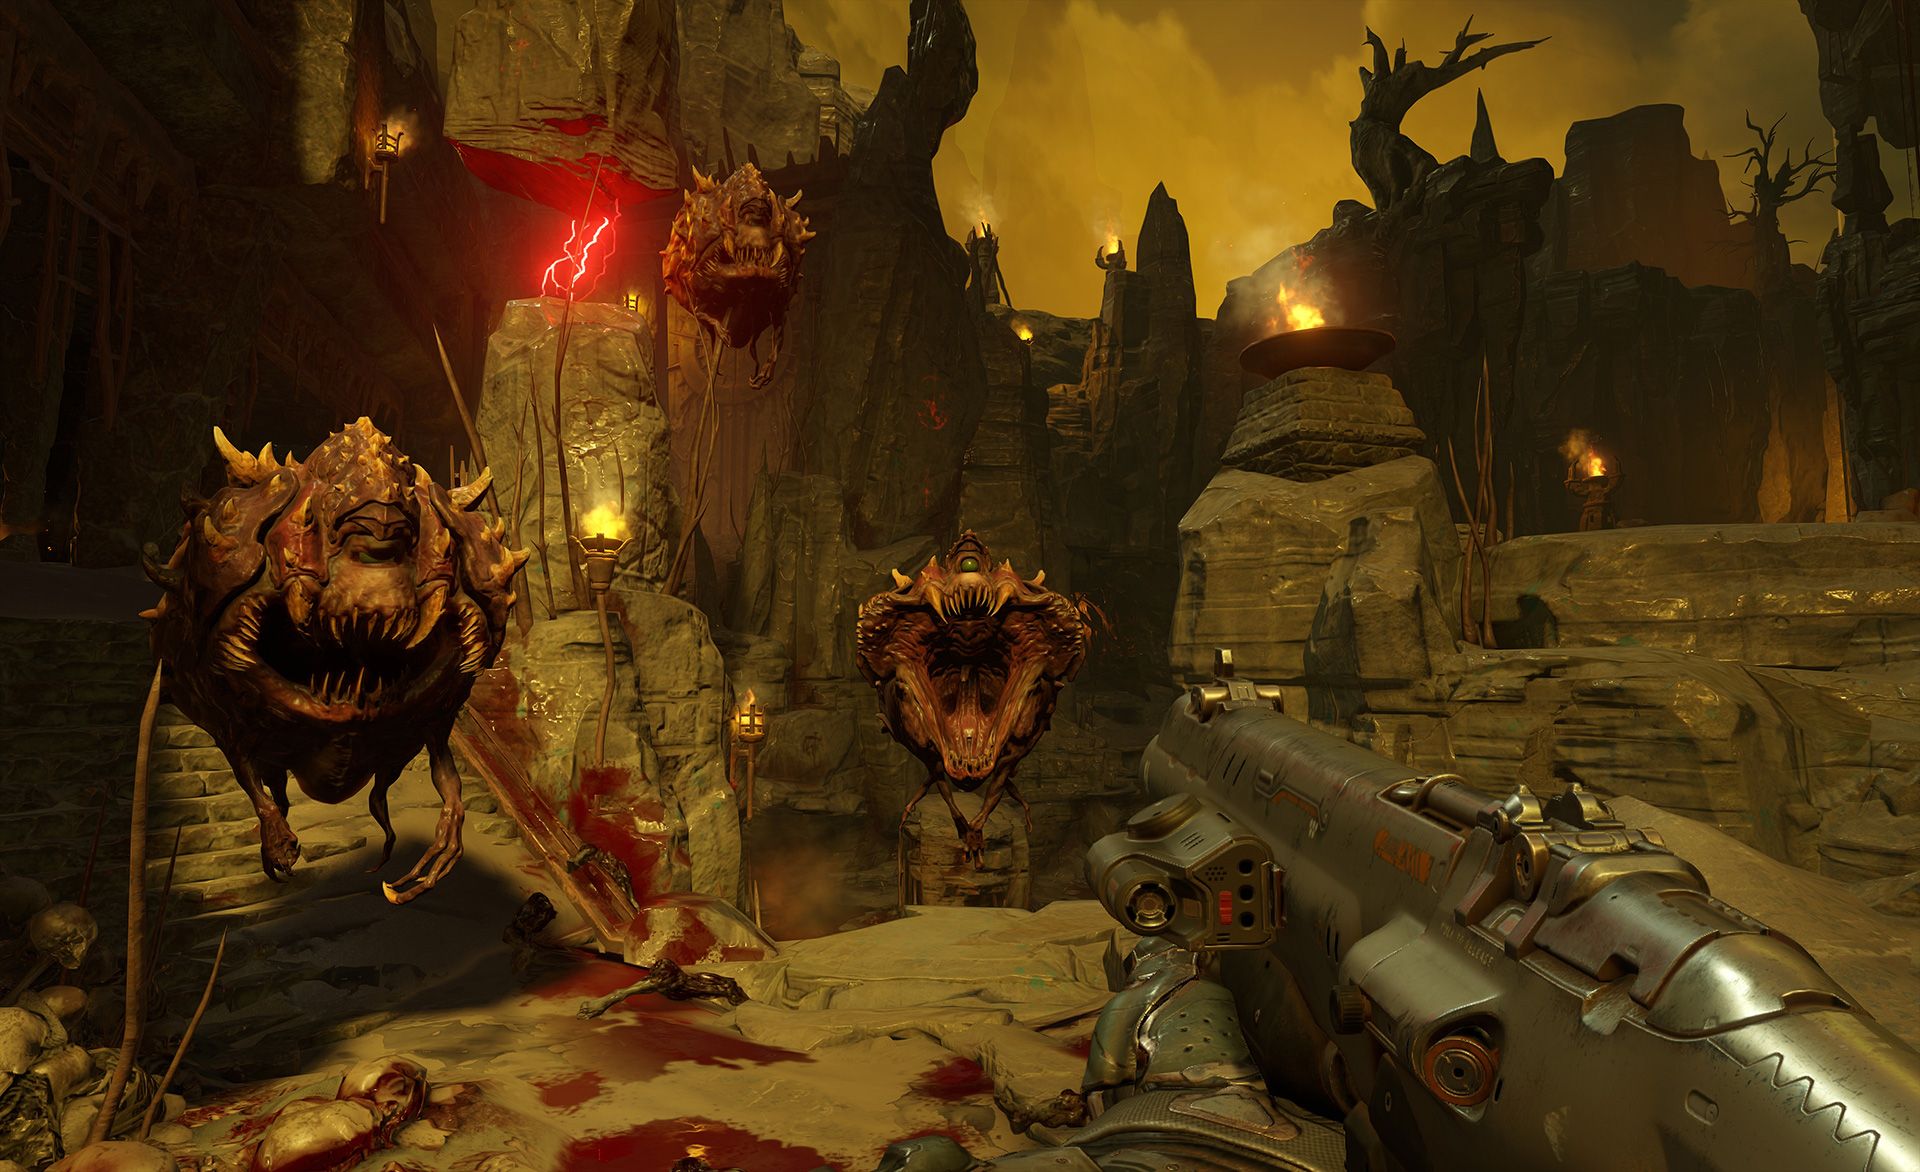 Doom 2016 триумфально вернула франшизу в мейнстрим спустя более чем десятилетие тишины